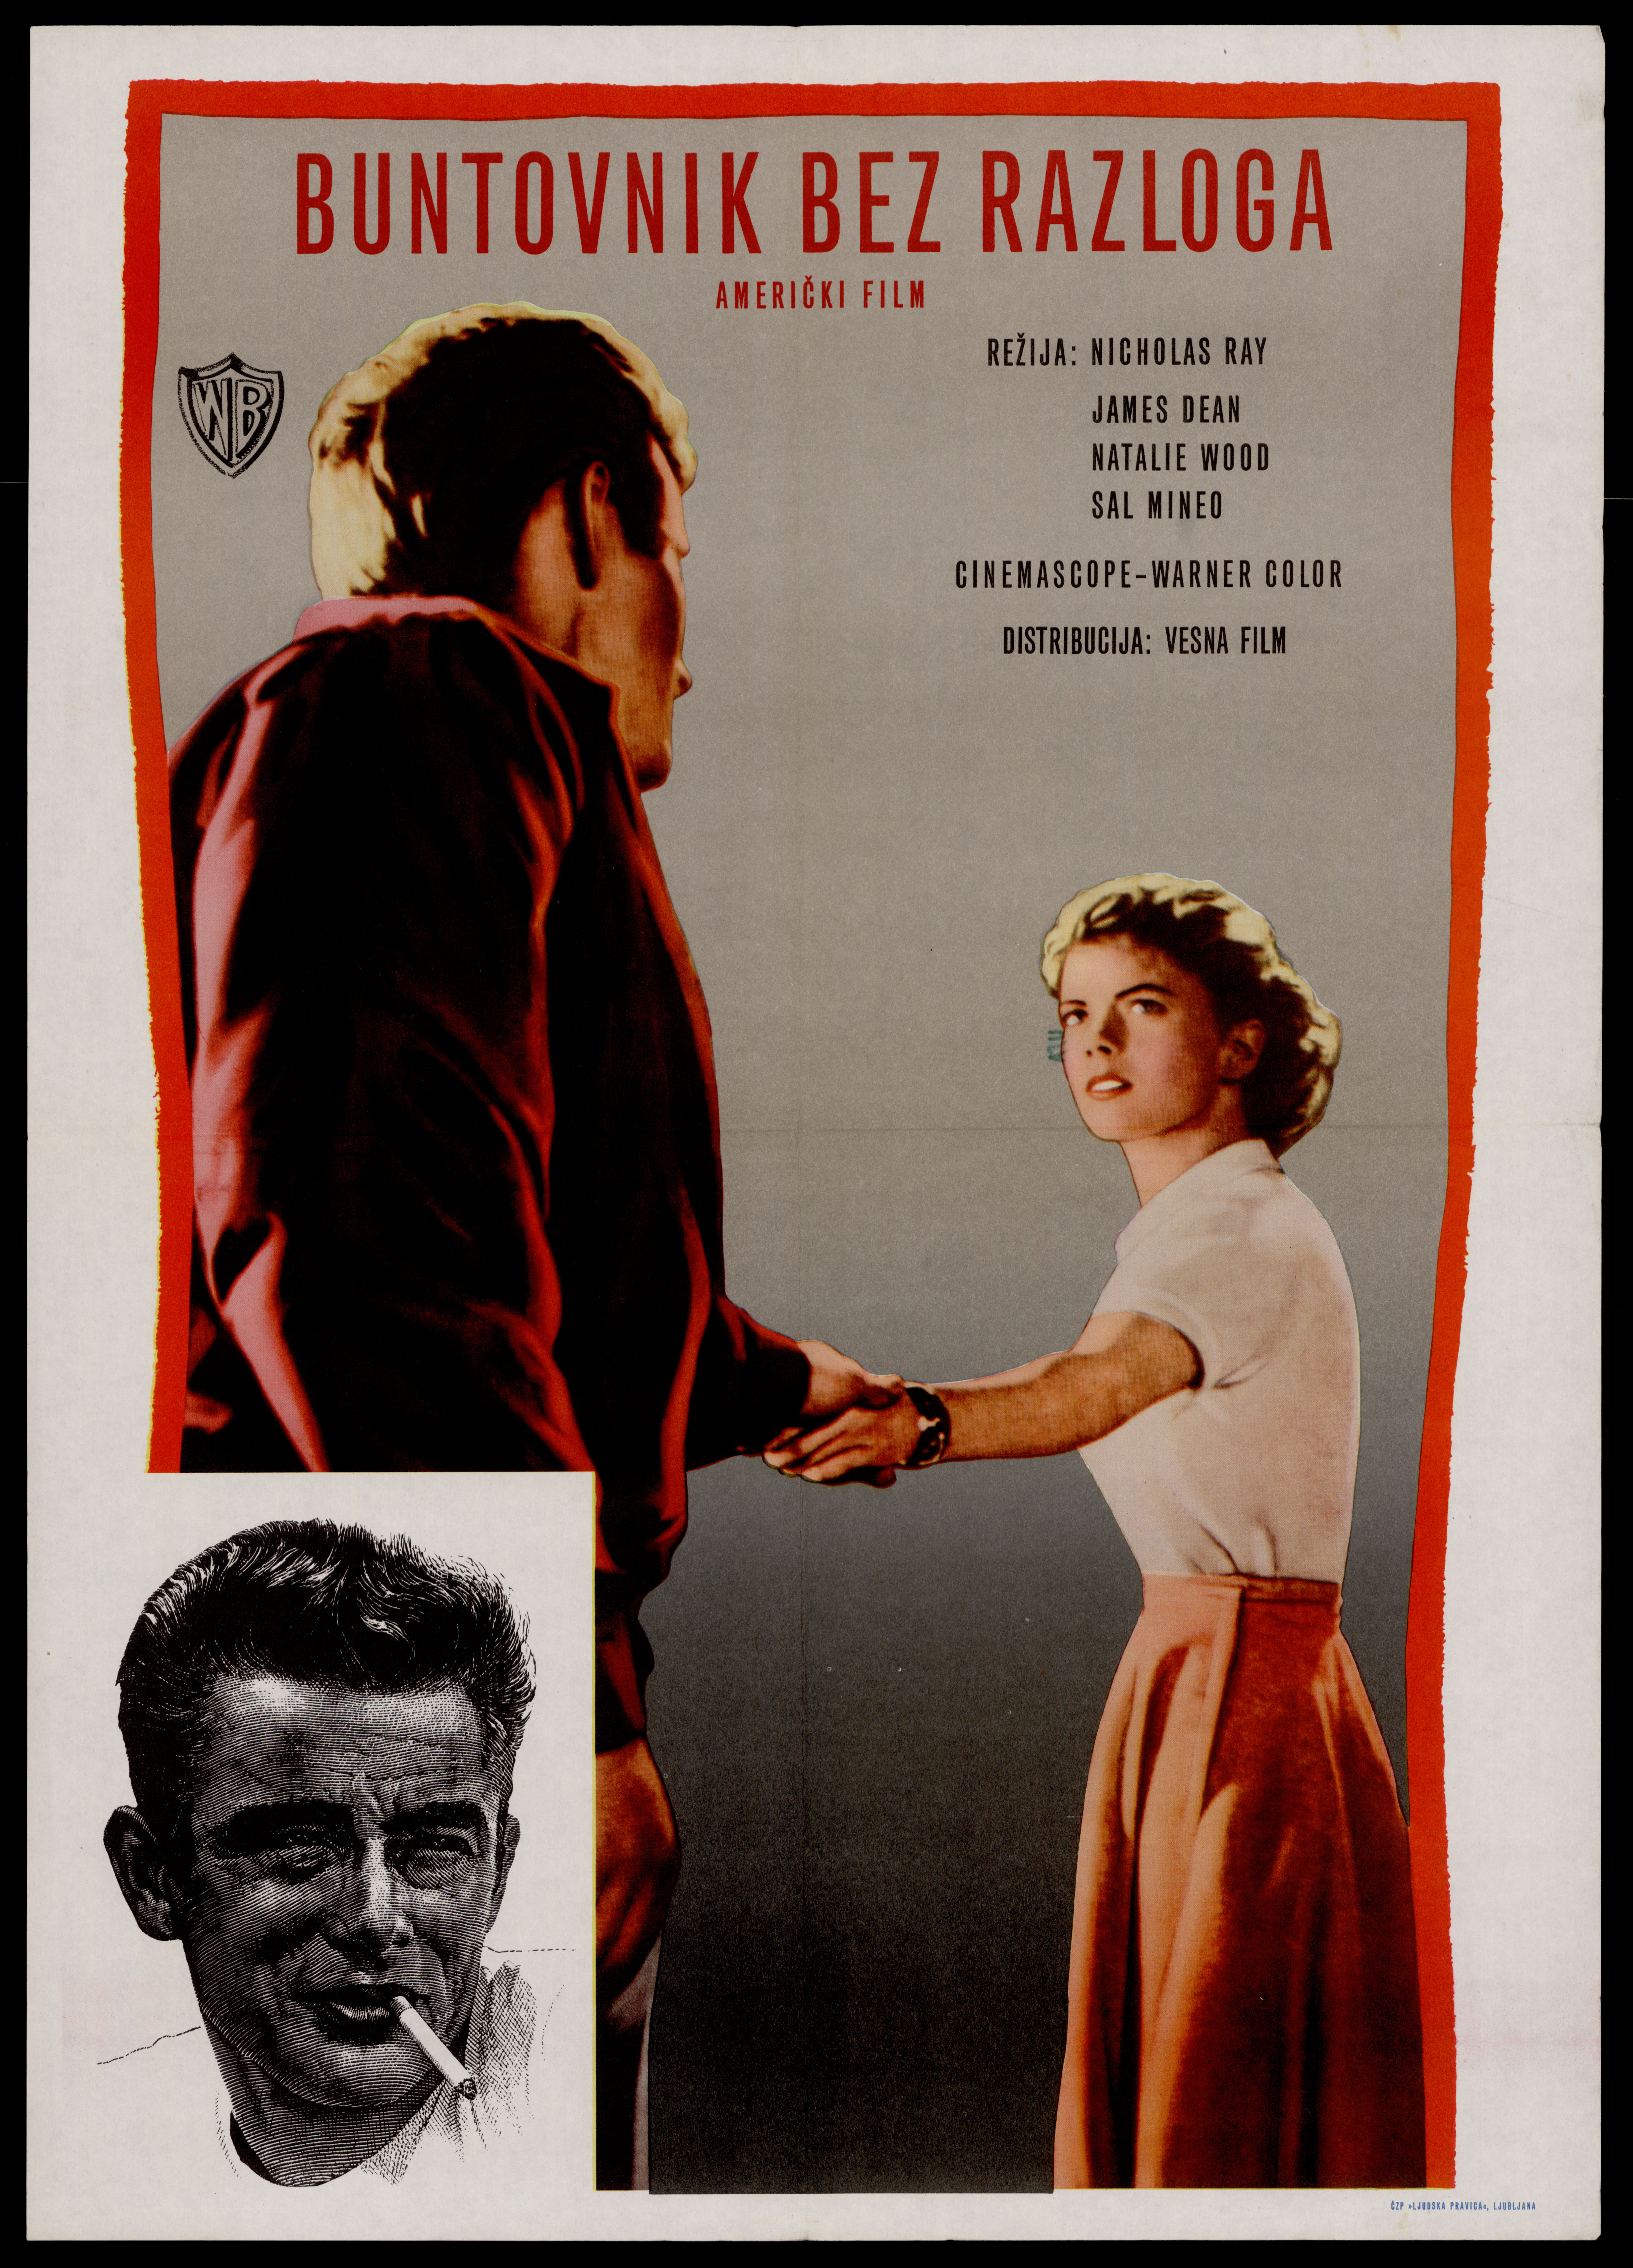 Plakat za film Buntovnik bez razloga (1955.) s Jamesom Deanom u glavnoj ulozi, čiji je utjecaj kritizirala Ideološka komisija čak prije njegova prikazivanja u Jugoslaviji.